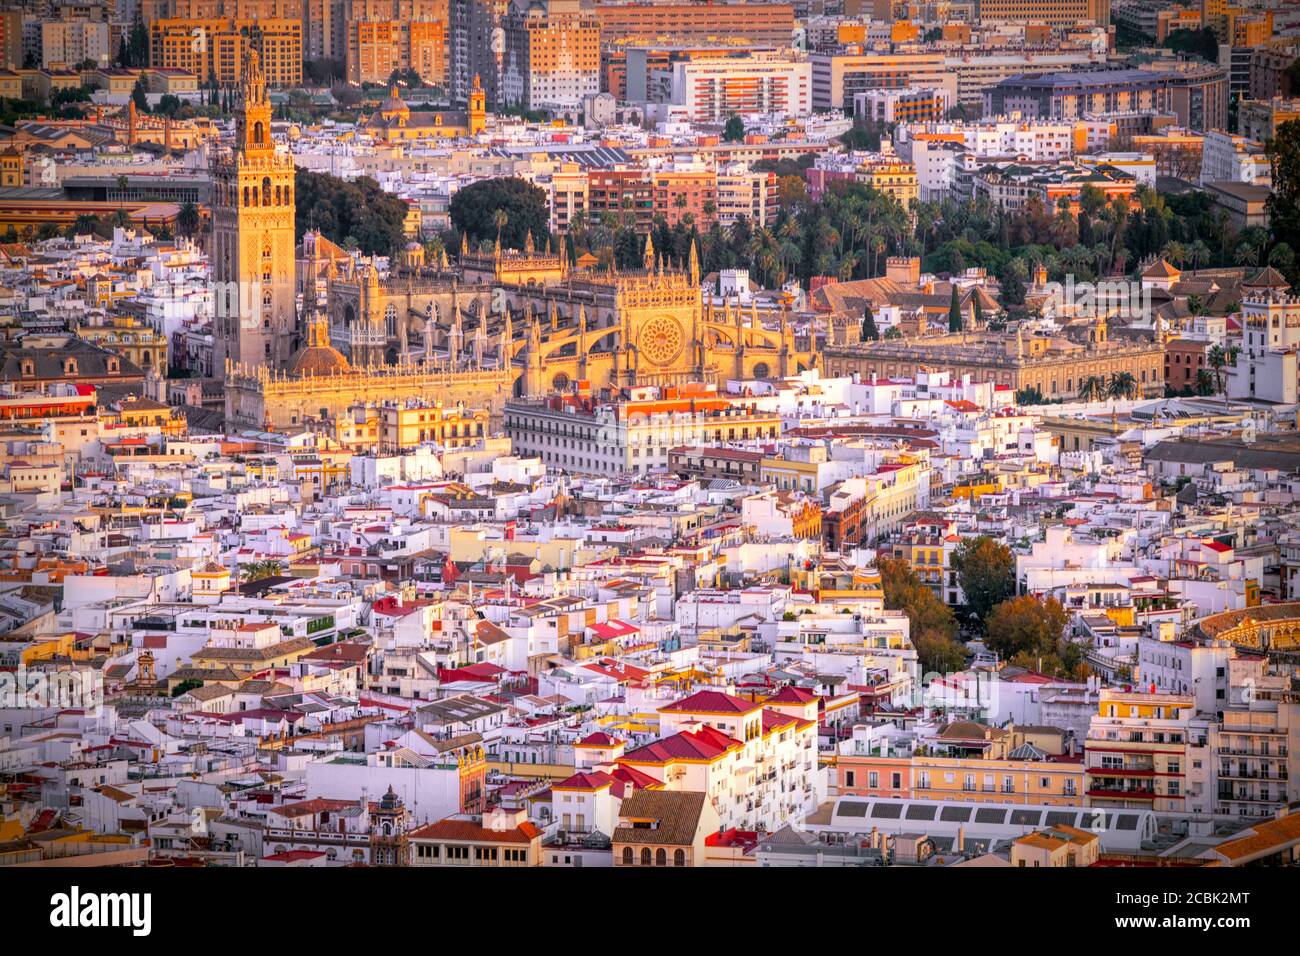 Vue aérienne du centre-ville de Séville, avec la tour Giralda, la cathédrale et le bâtiment Archivo de Indias, entre autres monuments, l'Espagne. Banque D'Images